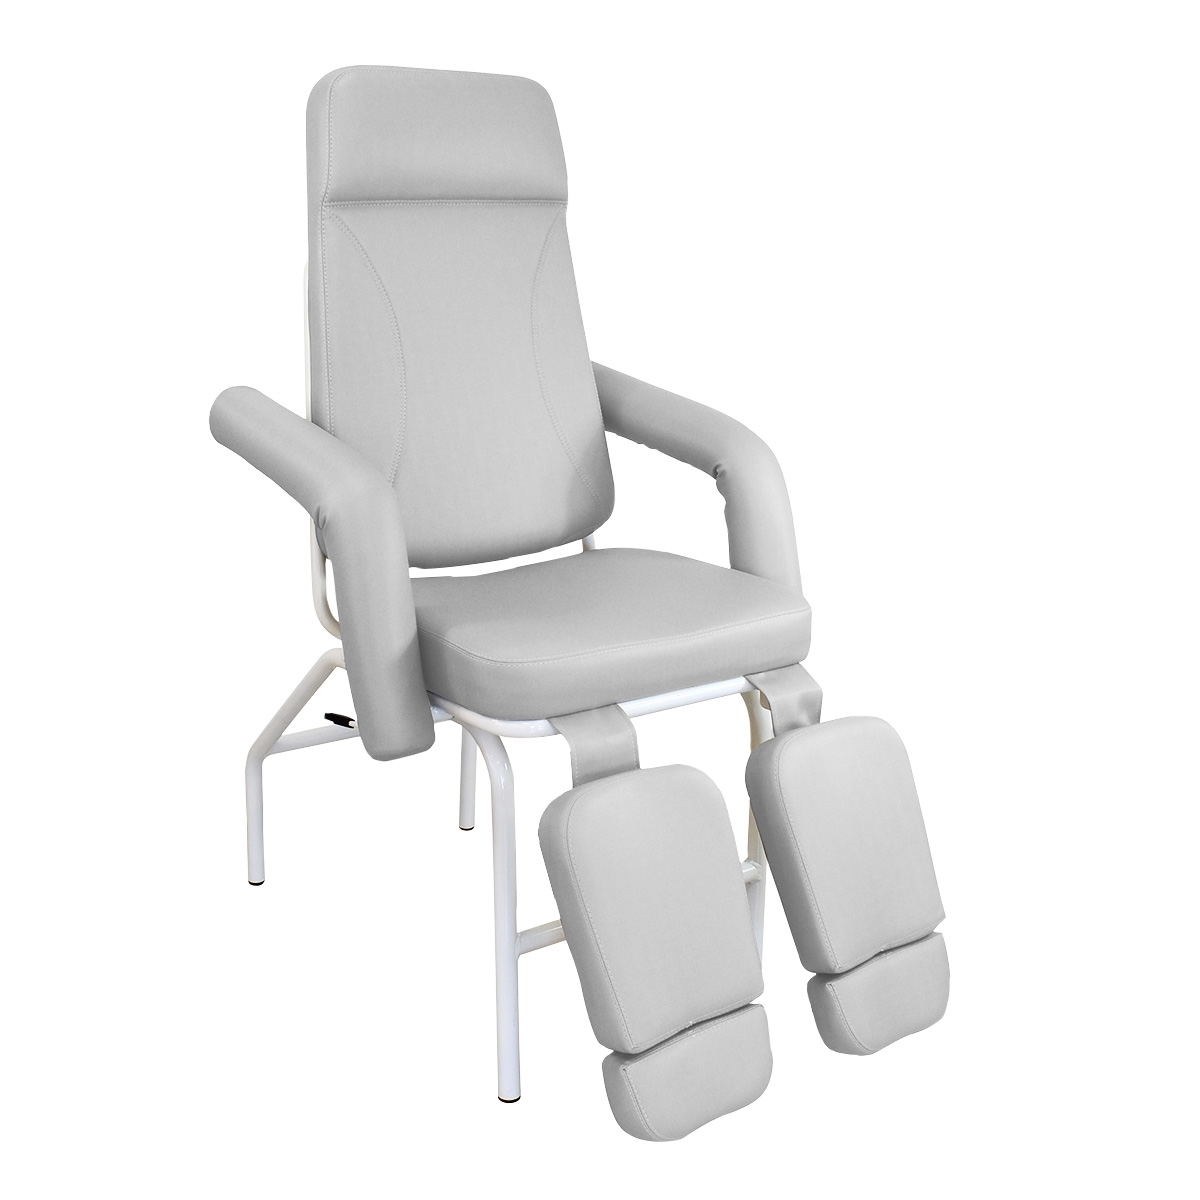 Cadeira De Podologia Articulada - Base Fixa